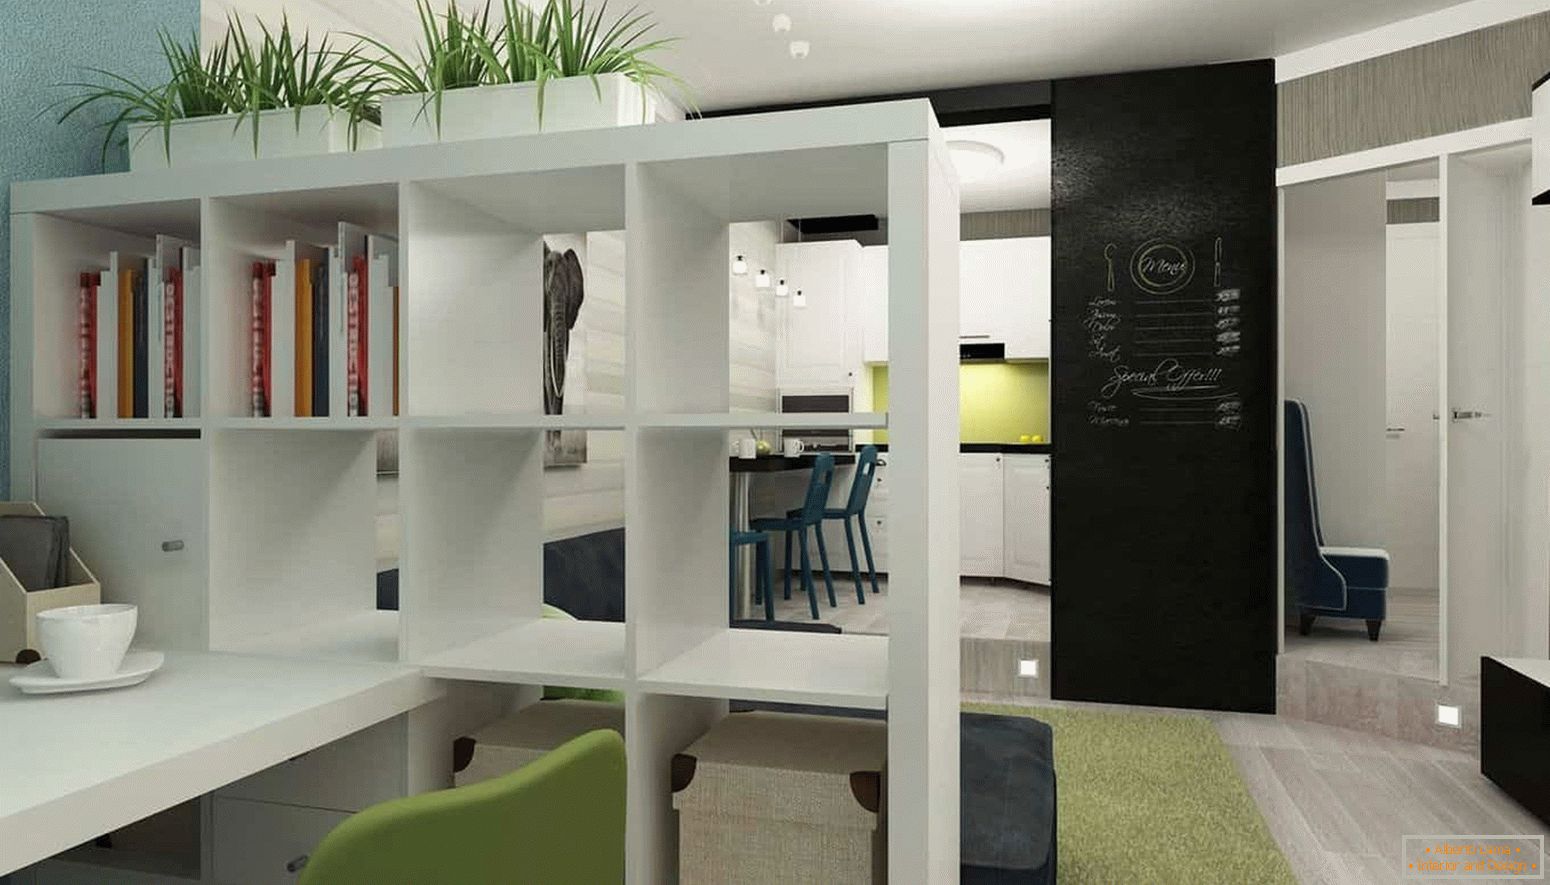 Все що потрібно в дизайні інтер'єру маленької квартири, кухня, вітальня і кабінет